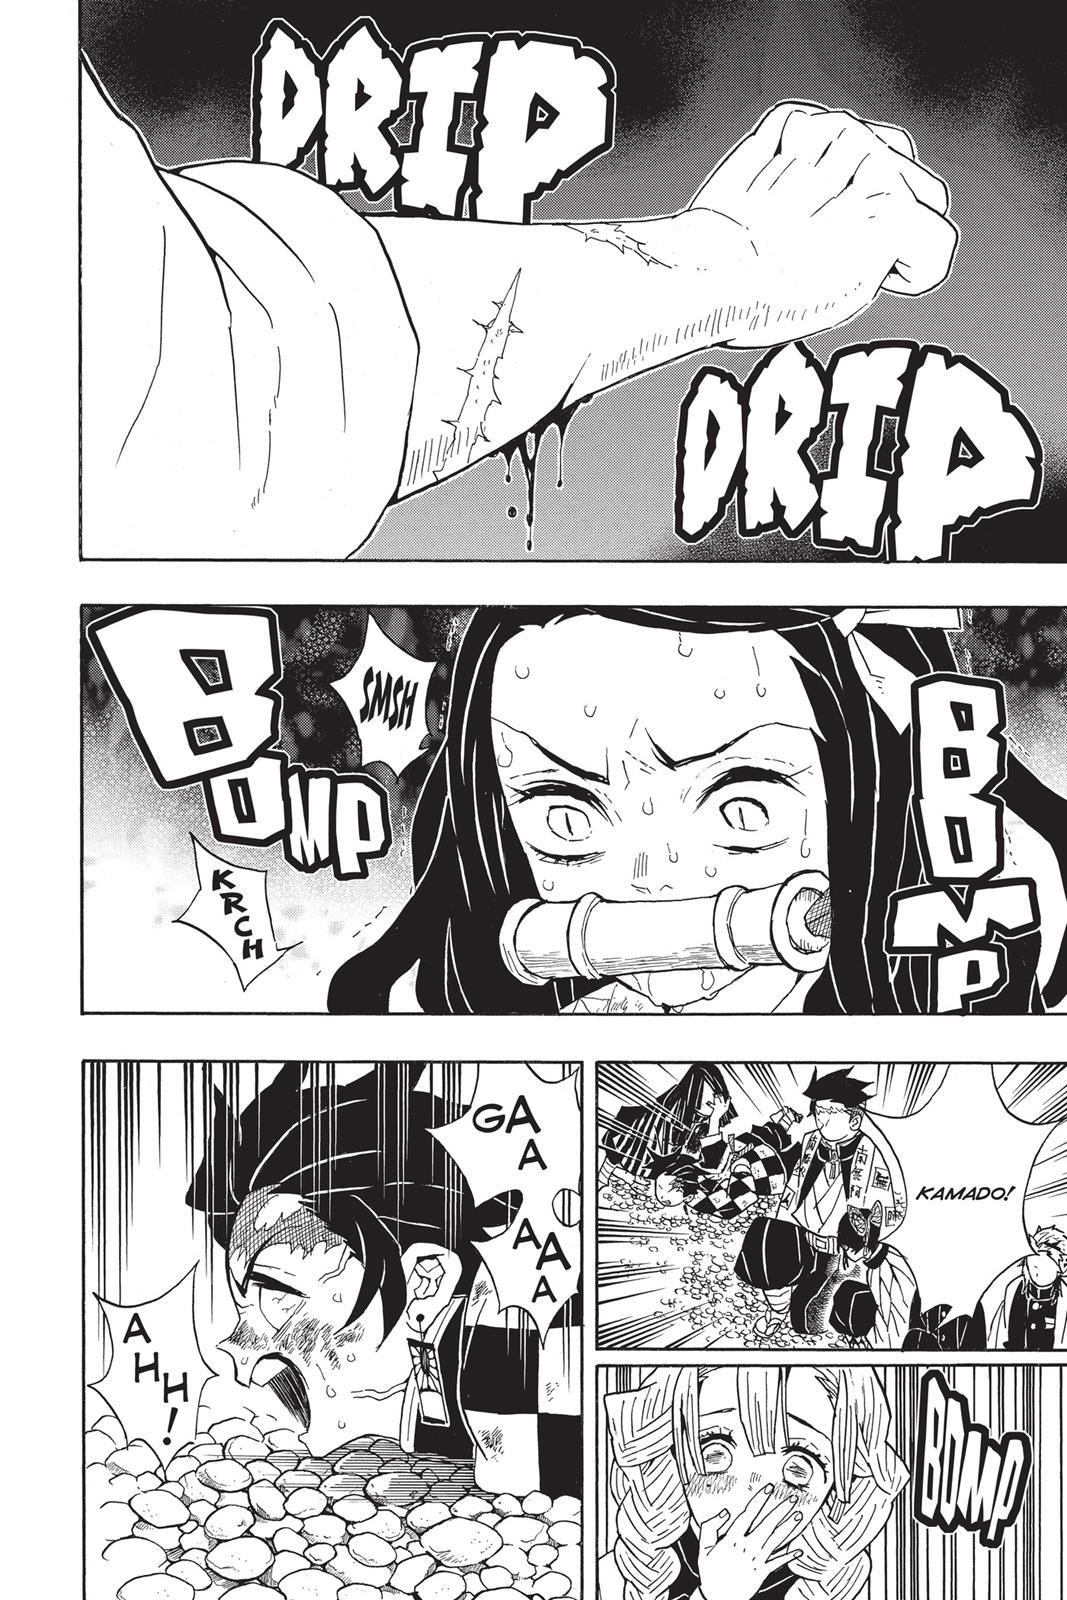 Demon Slayer Manga Manga Chapter - 47 - image 6